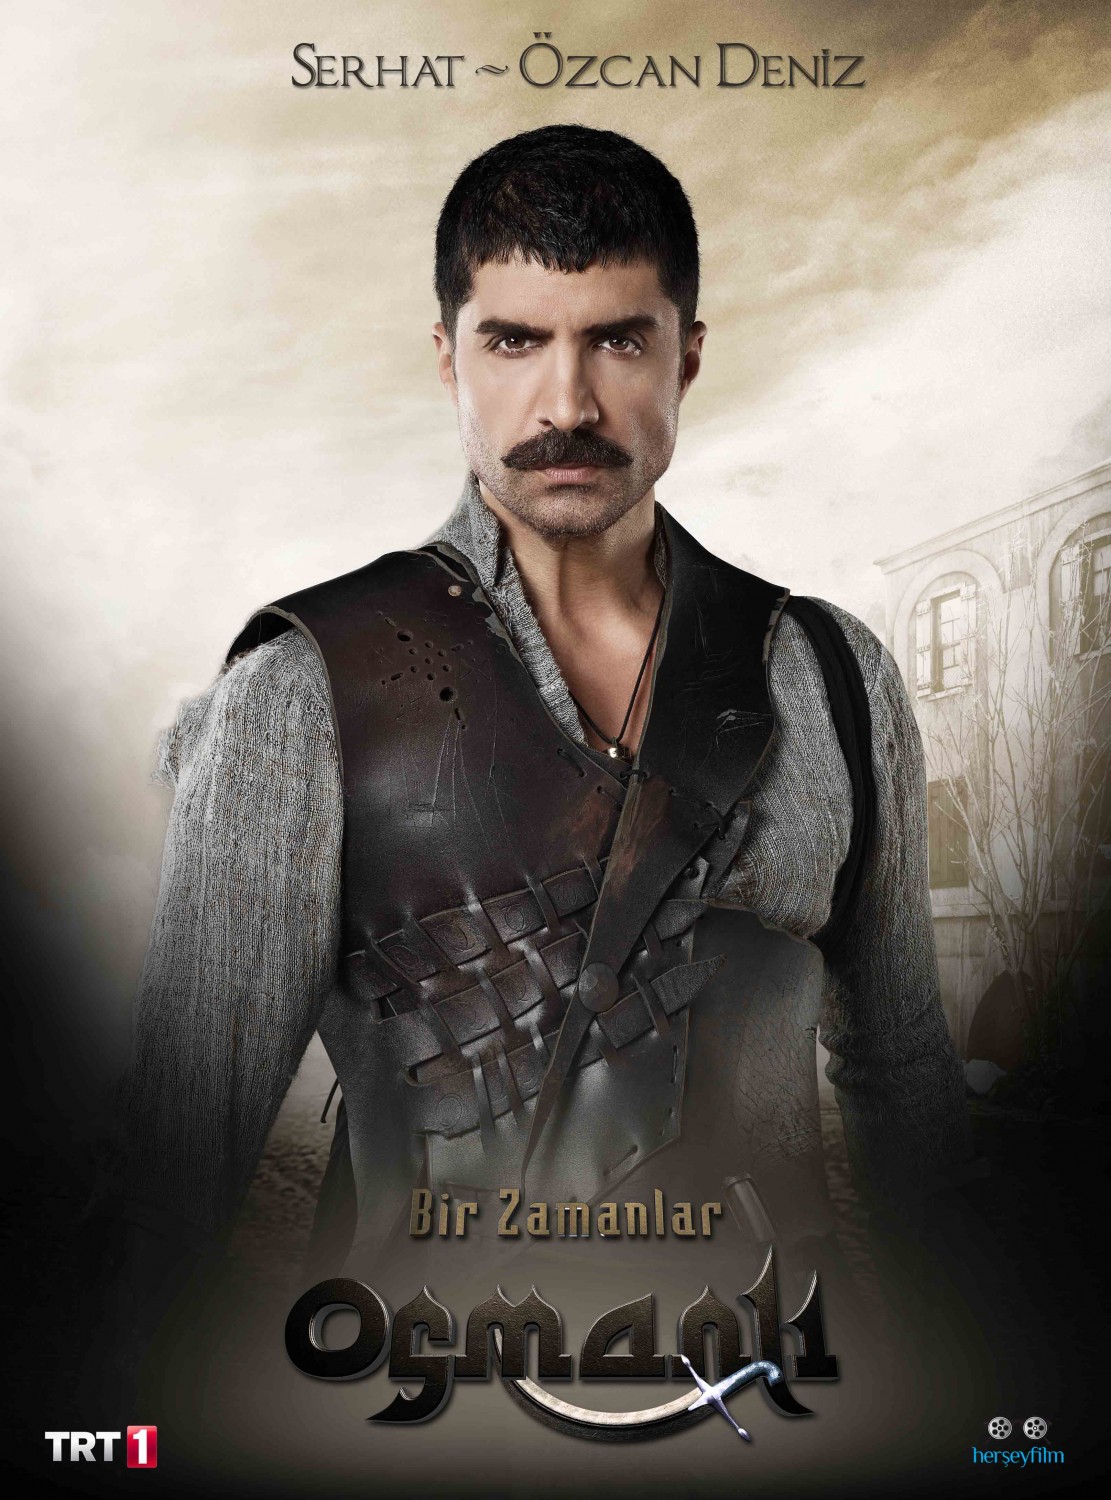 Extra Large TV Poster Image for Bir Zamanlar Osmanli Kiyam (#13 of 26)